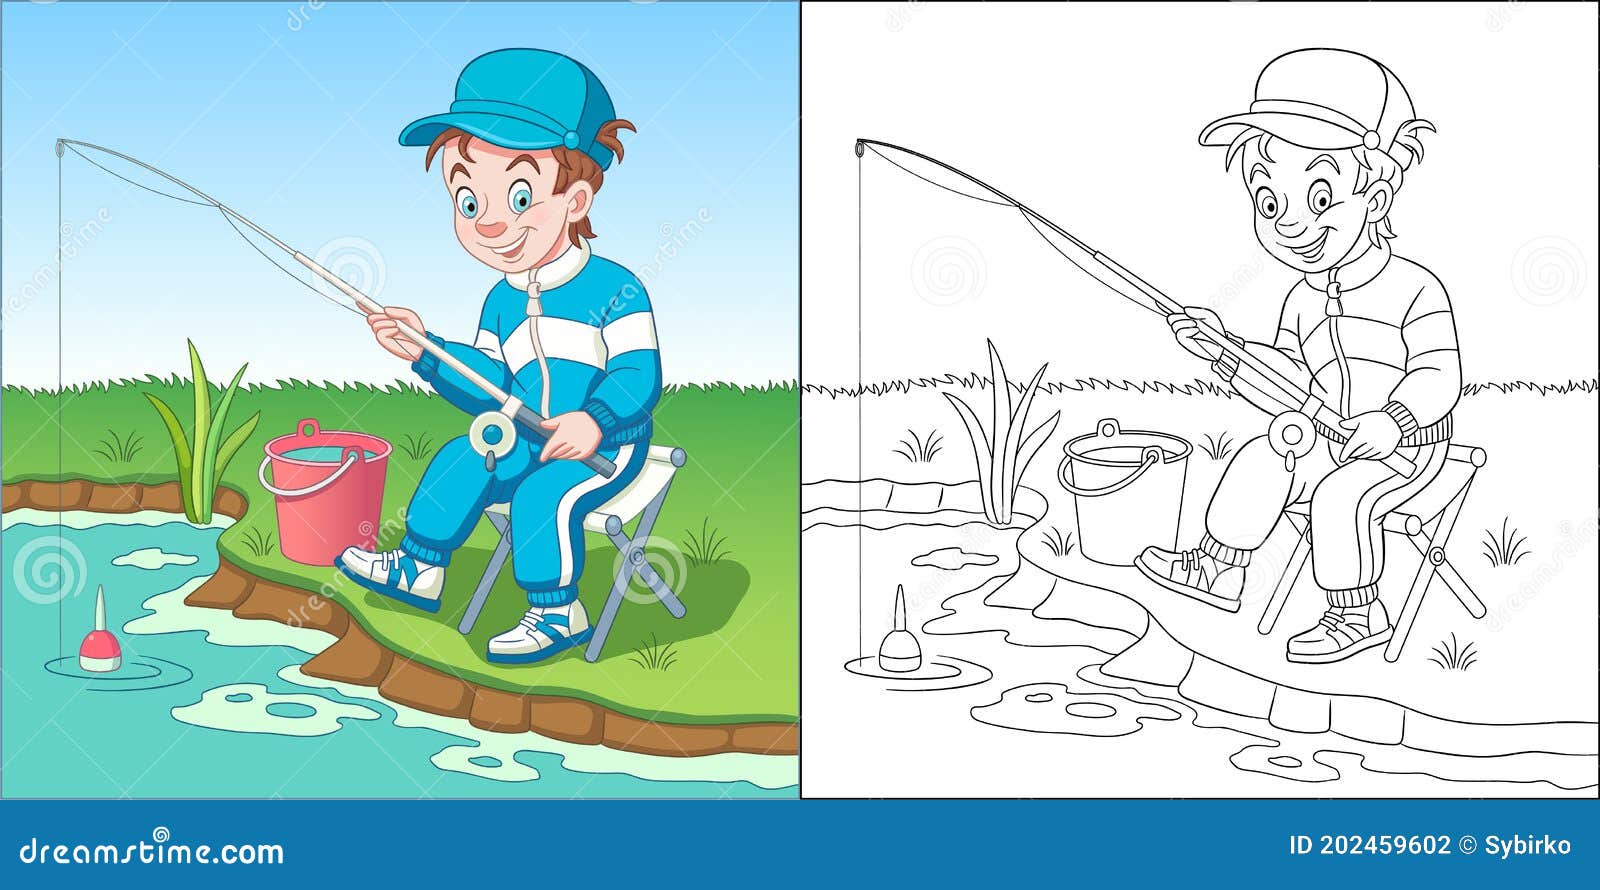 201 Kids Fishing Clip Art Stock Illustrations, Vectors & Clipart